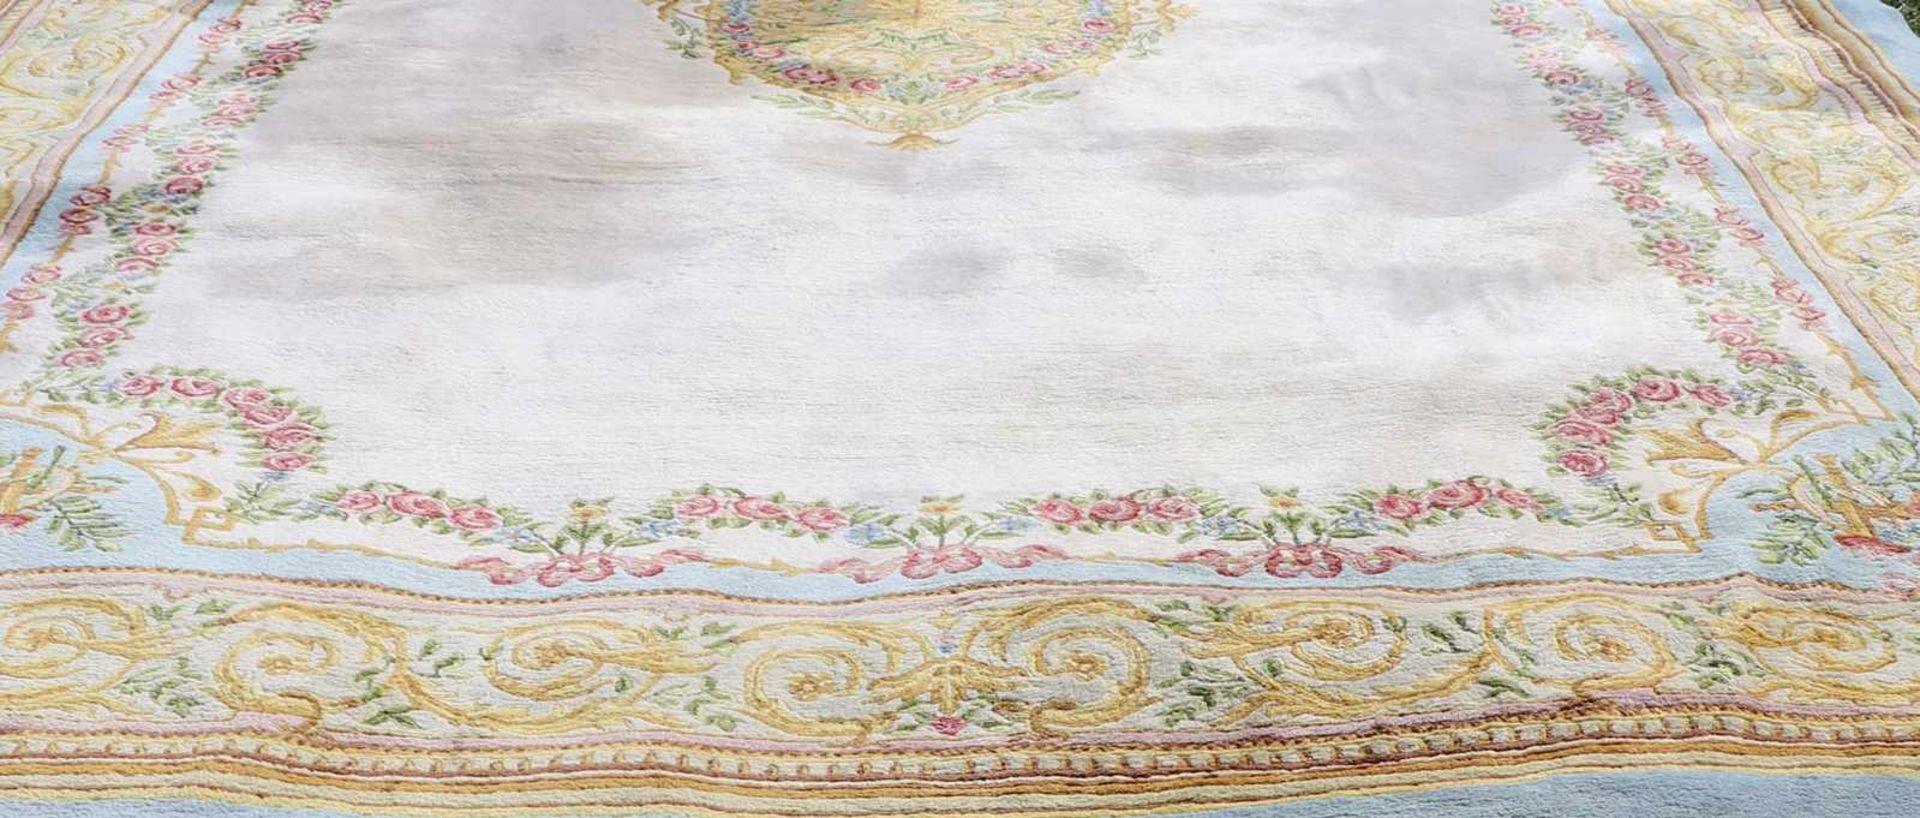 Großer Teppich, AubussonWolle, leicht fleckig, 650 x 380 cm. - Bild 3 aus 3